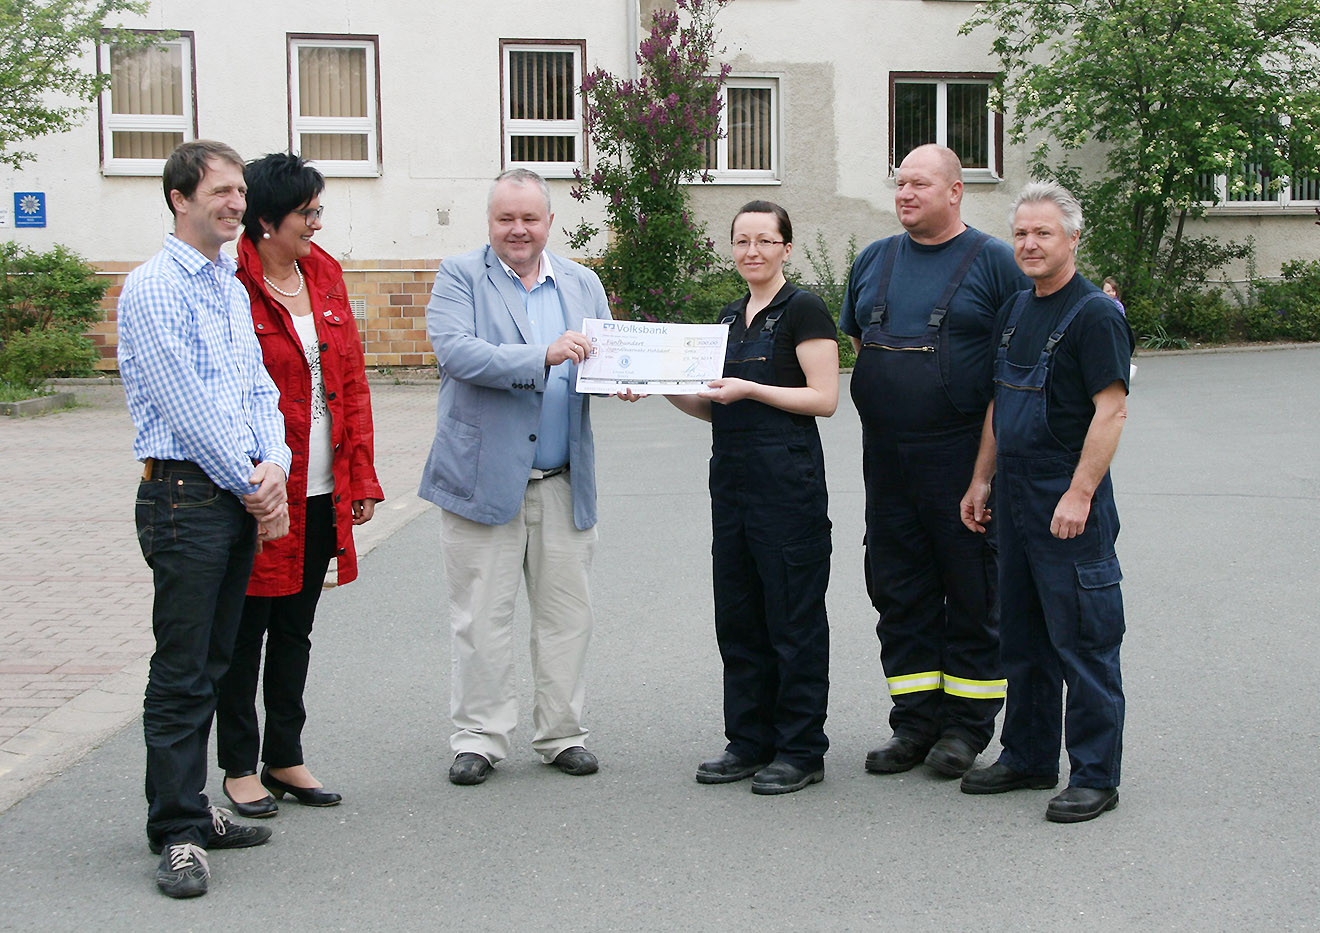 Lionsclub Greiz übergab am 1. Mai 2014 eine Spende in Höhe von 500 Euro